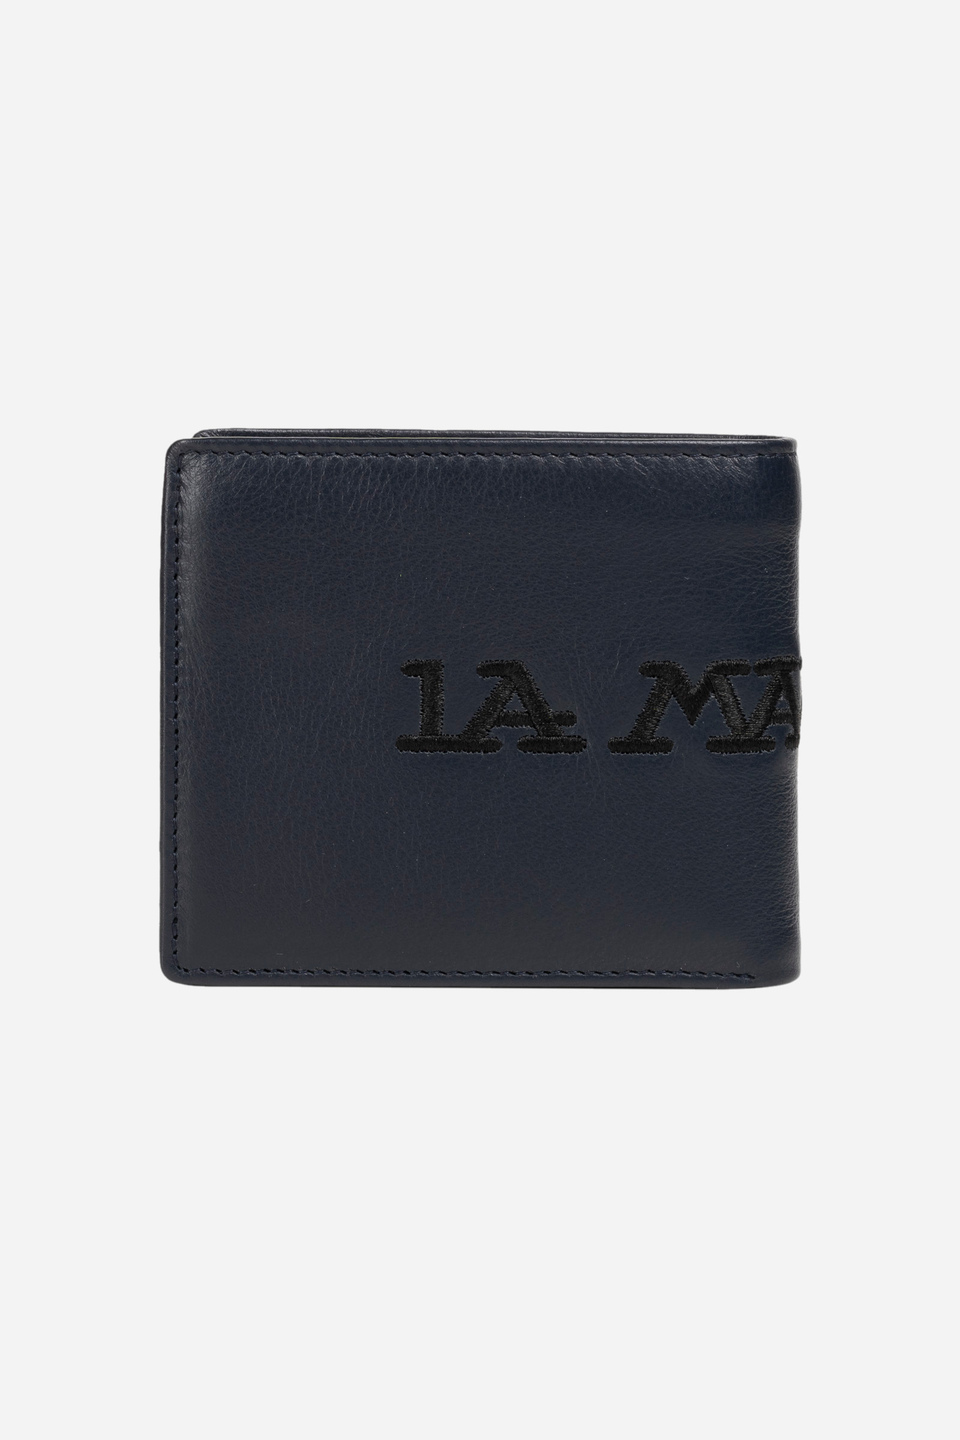 Leather wallet - Lopez | La Martina - Official Online Shop